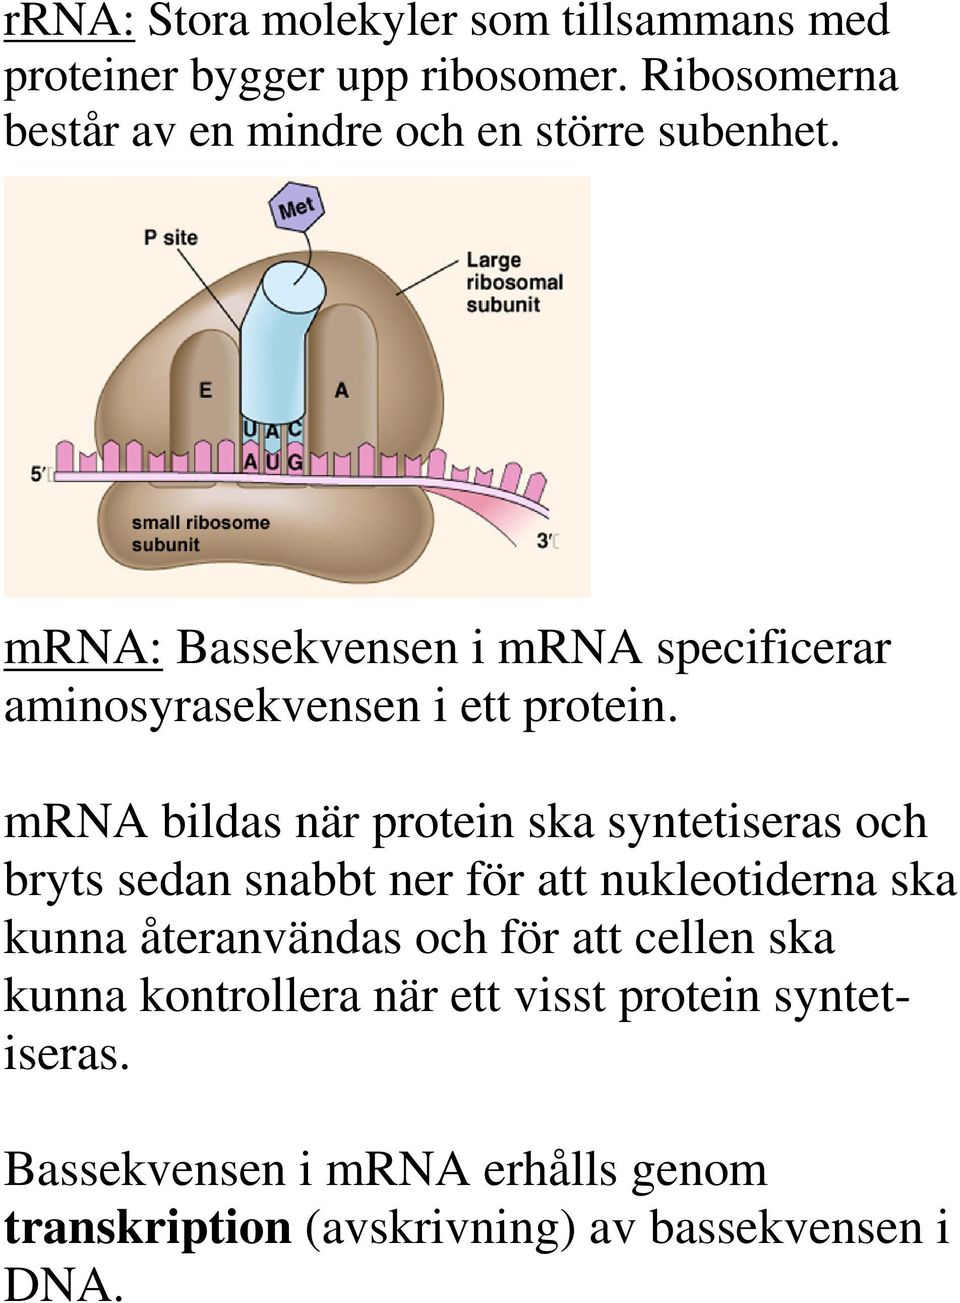 mrna: Bassekvensen i mrna specificerar aminosyrasekvensen i ett protein.